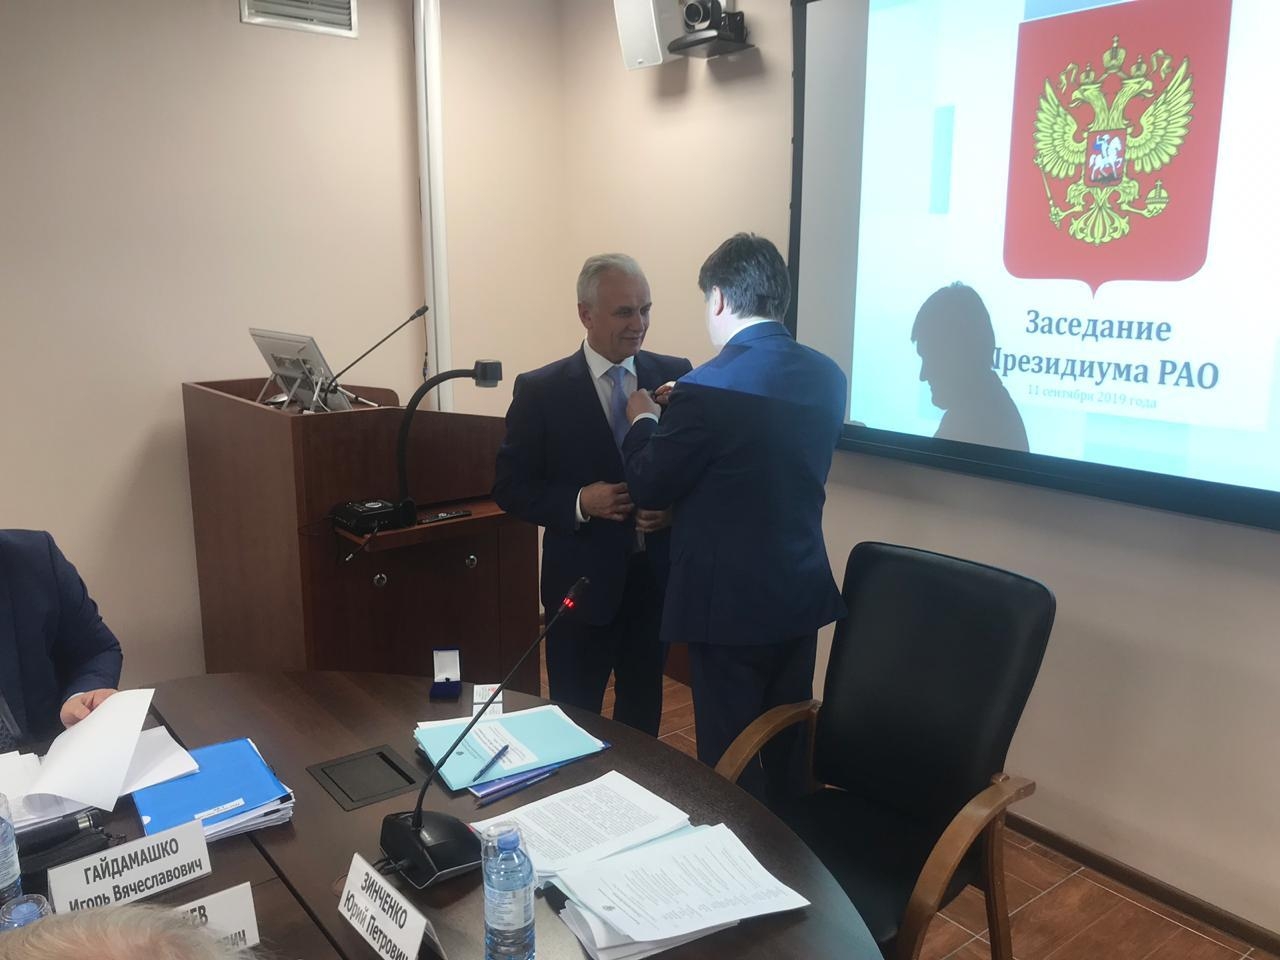 Ректор-азербайджанец награждён российской медалью в сфере образования - ФОТО